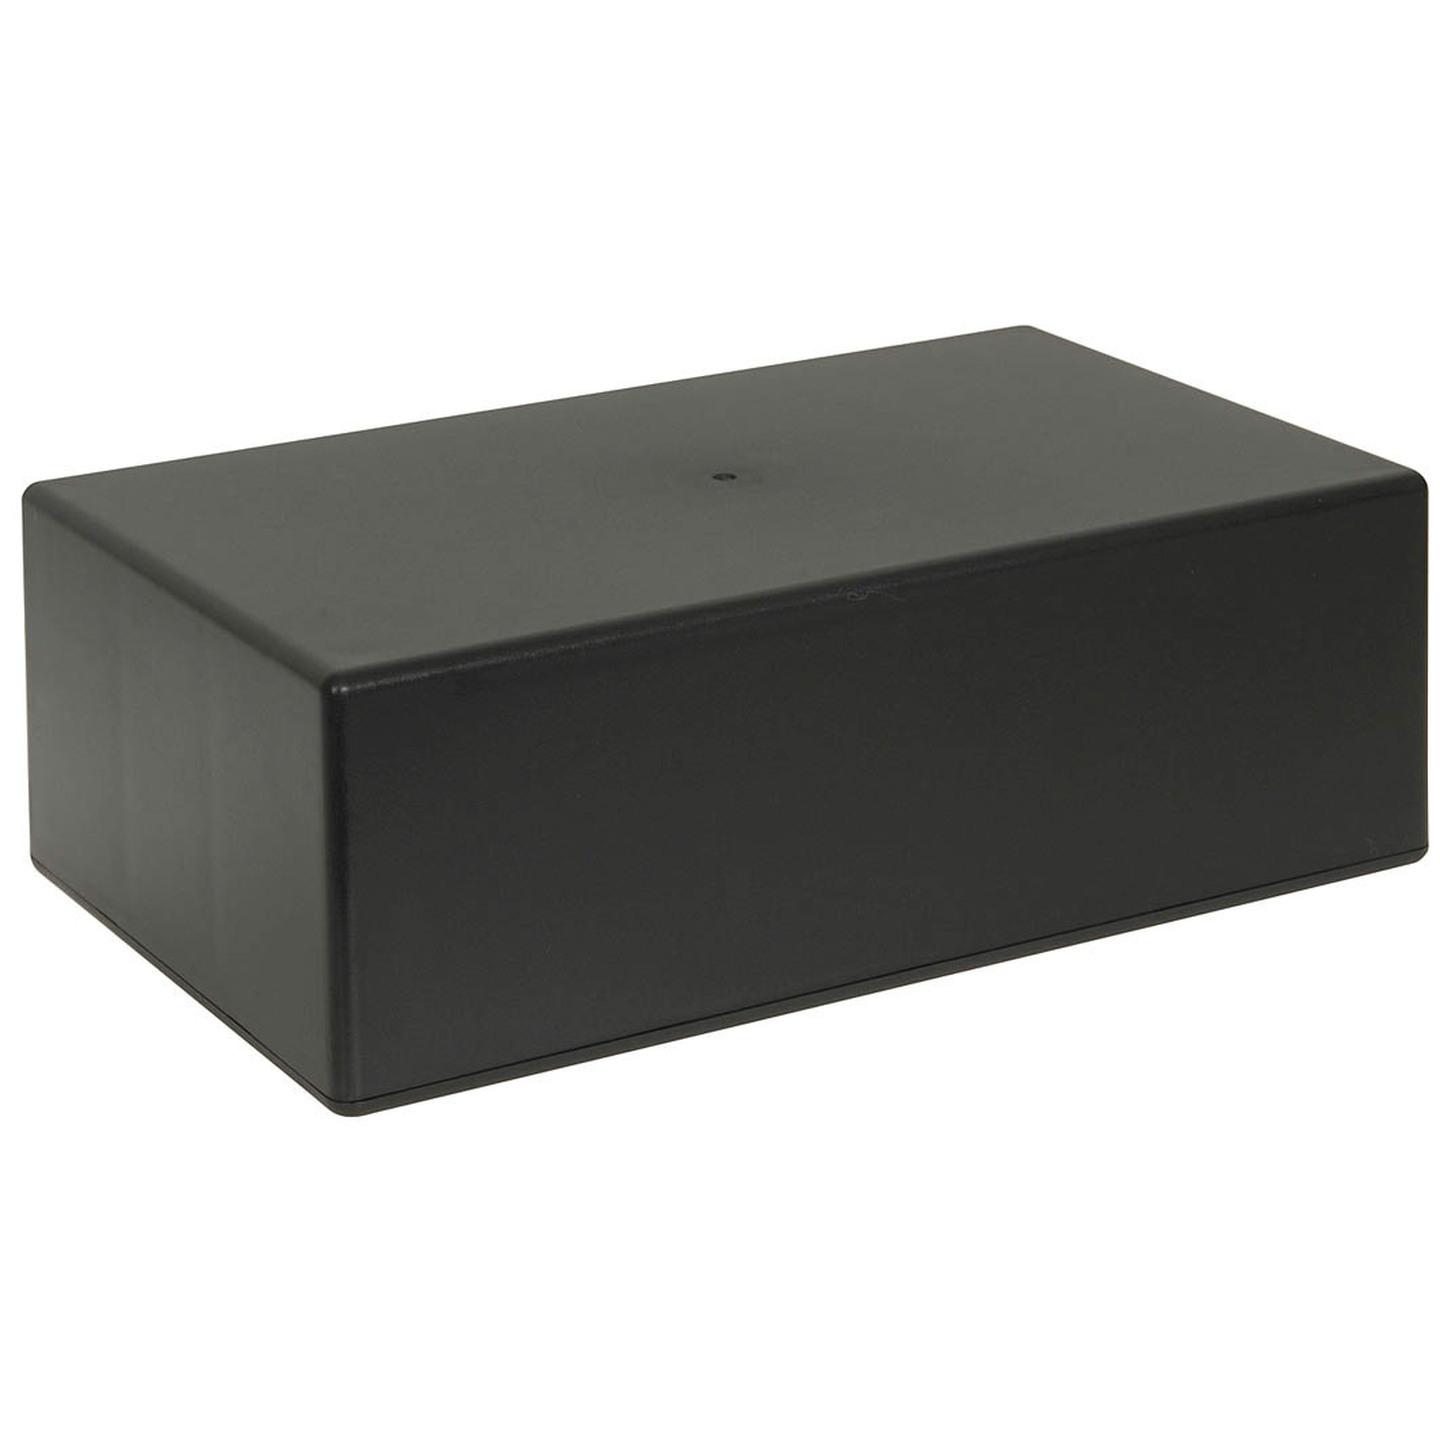 Jiffy Box - Black - 158 x 95 x 53mm